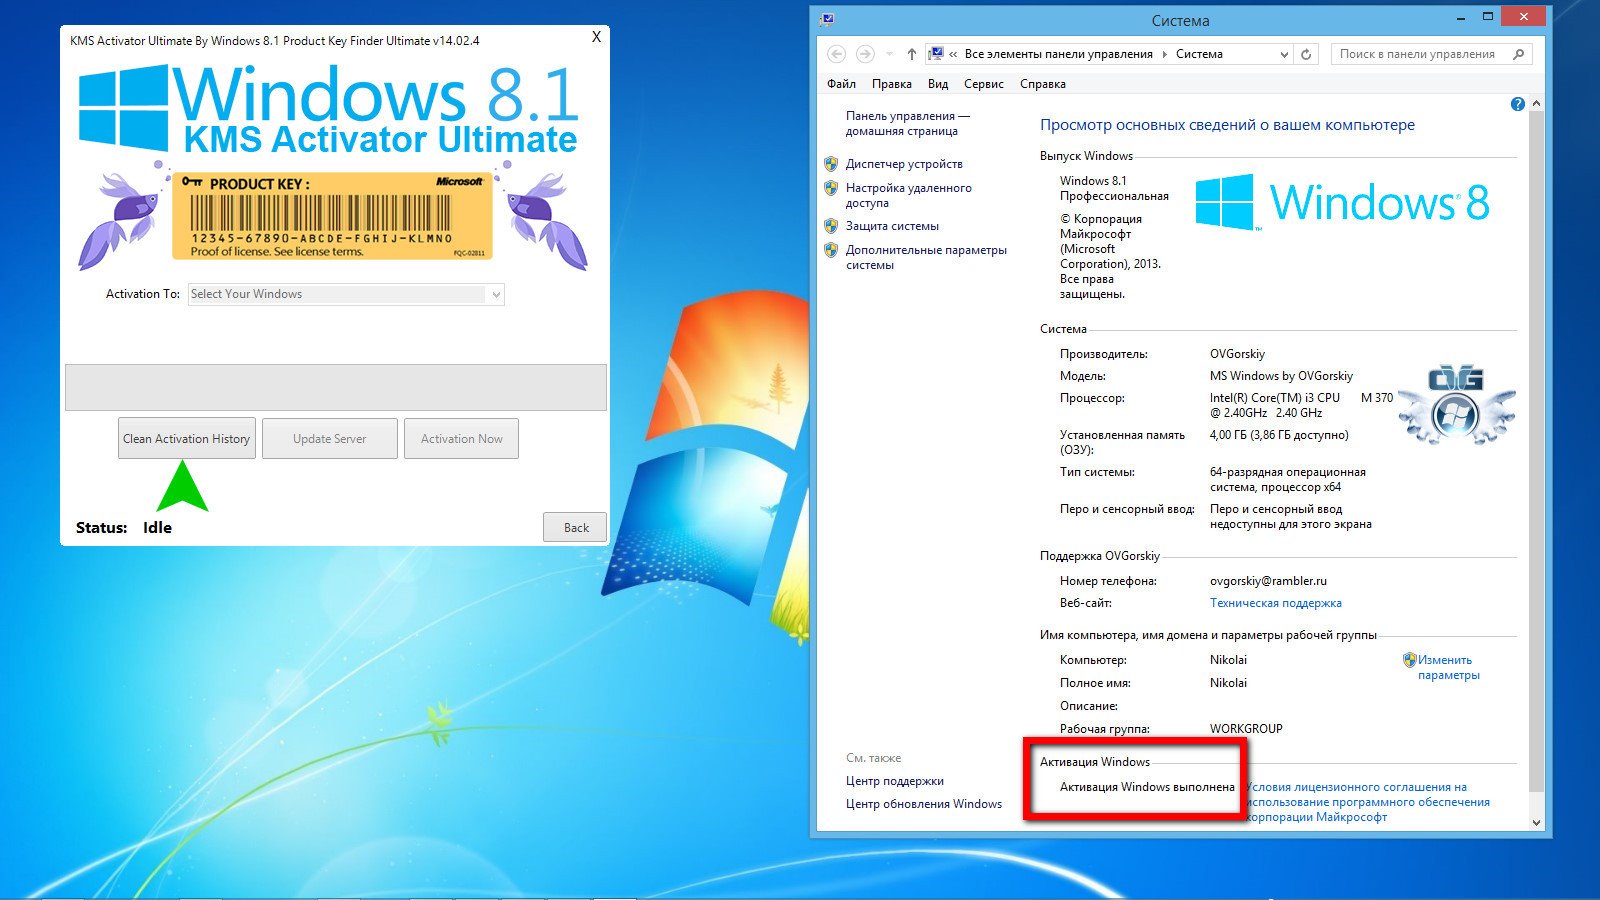 Windows 7 Activator, Loader Full Download 32/64 bit Here!